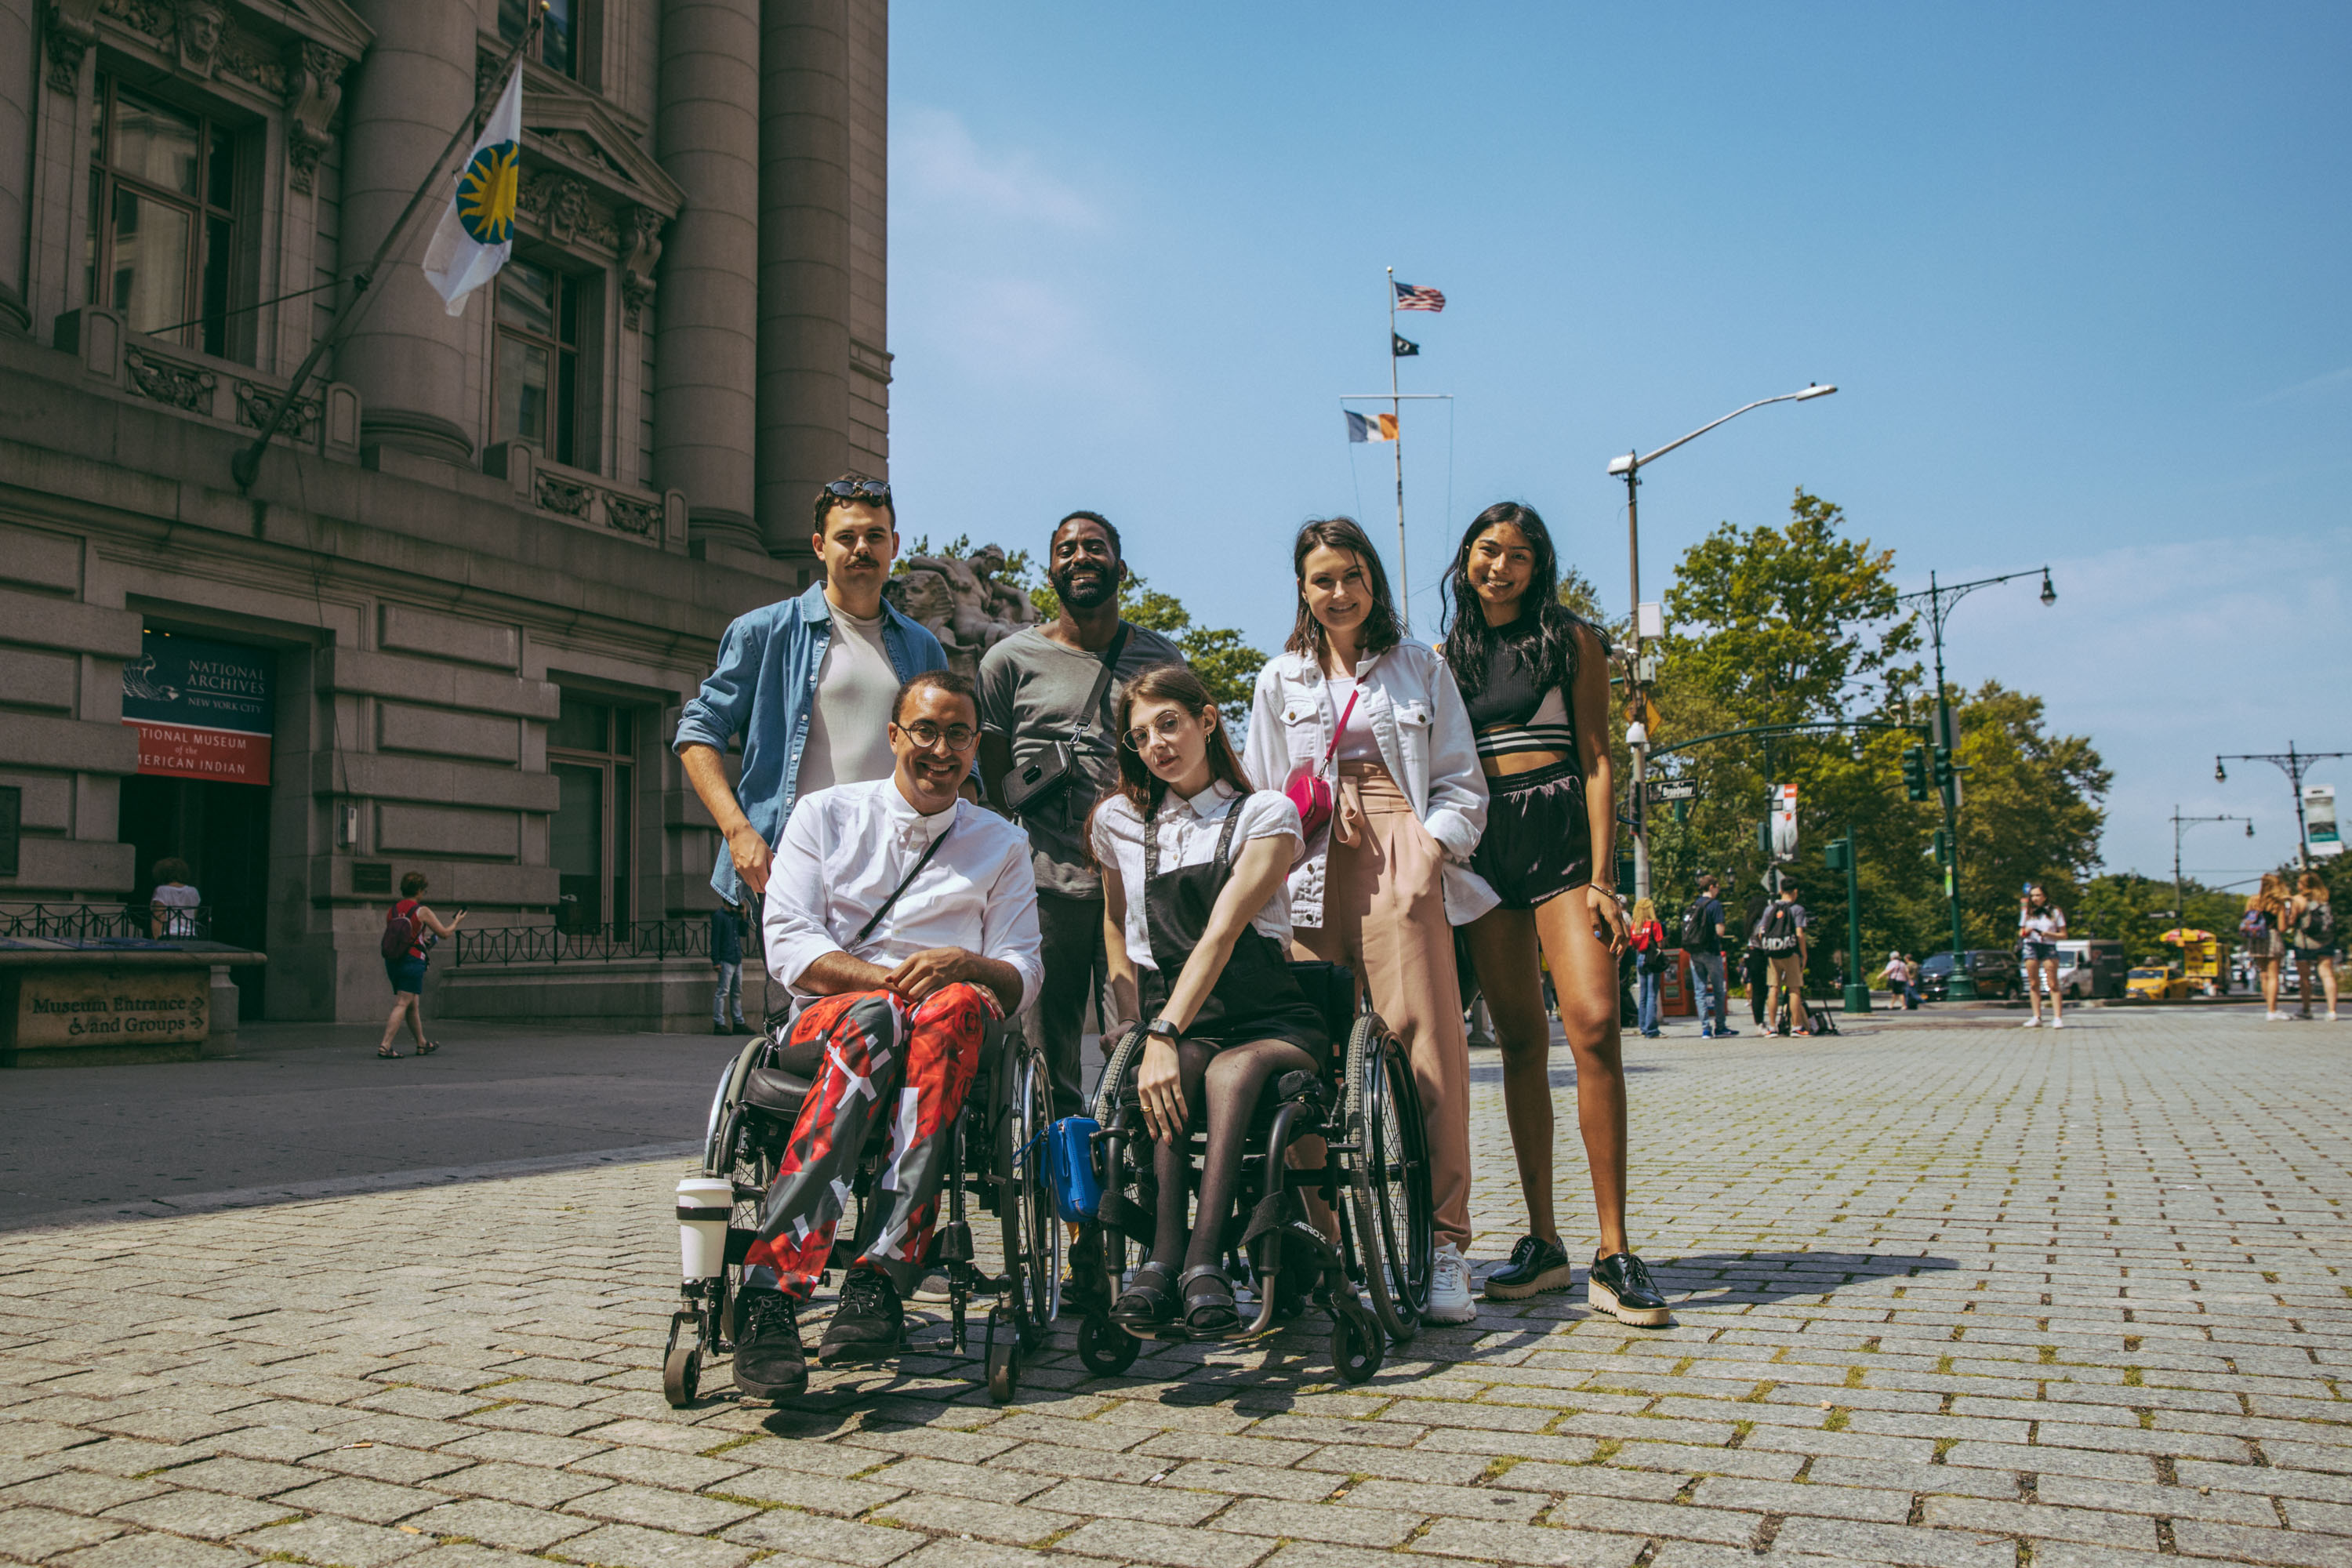 2019 FFORA BryanLuna disability fashion design identity & representation